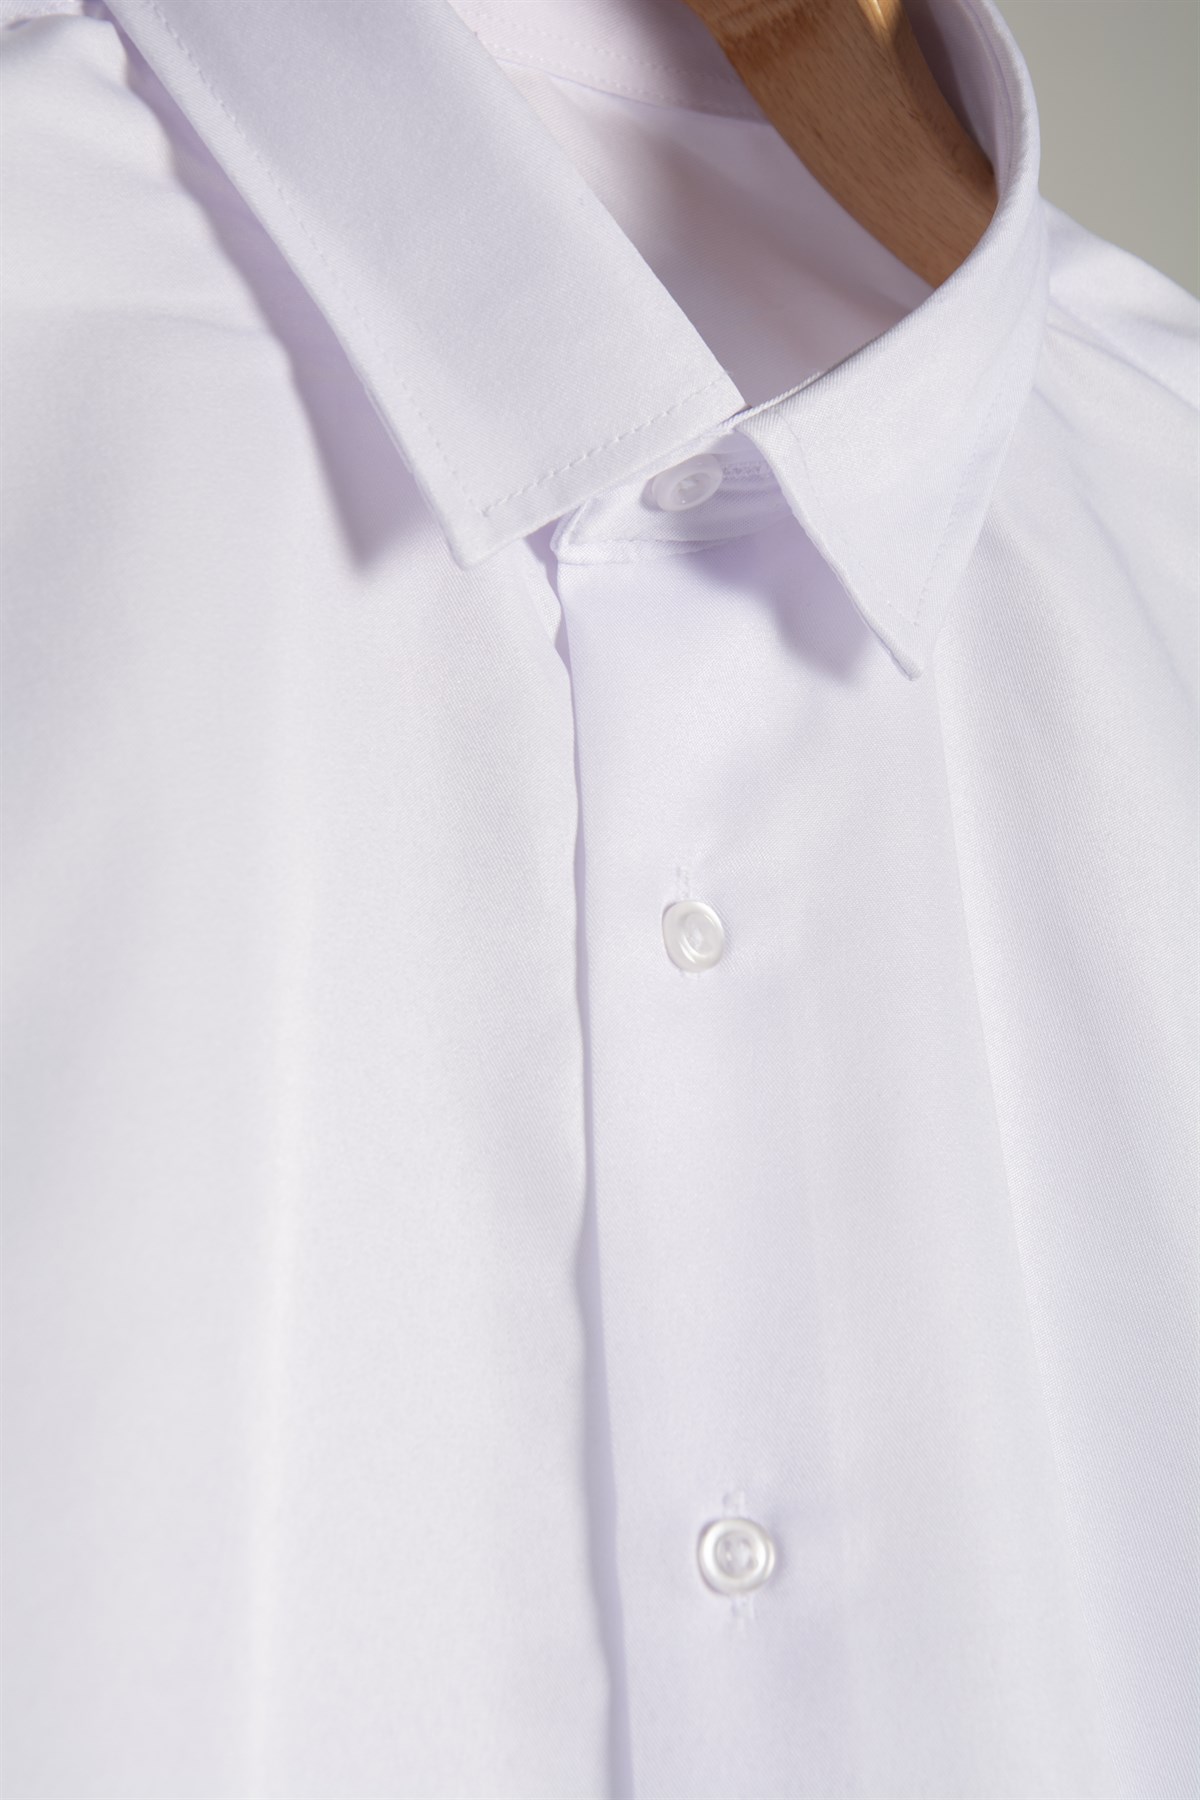 Erkek Ekstra Slim Fit Arkası Şeritli Uzun Kollu Takım Elbise Gömleği  22Y-4300633-1 Beyaz | Terapi Giyim